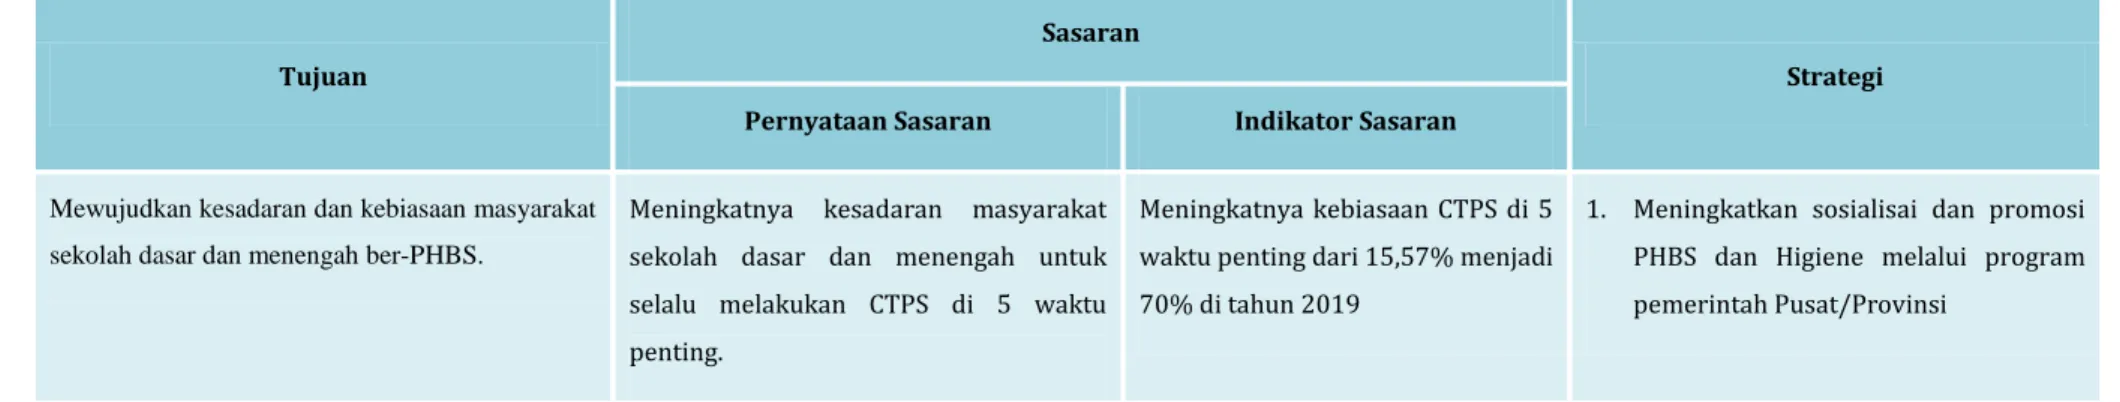 Tabel 3.5 : Tujuan Sasaran dan Strategi Pengelolaan PHBS terkait sanitasi (tatanan sekolah) 